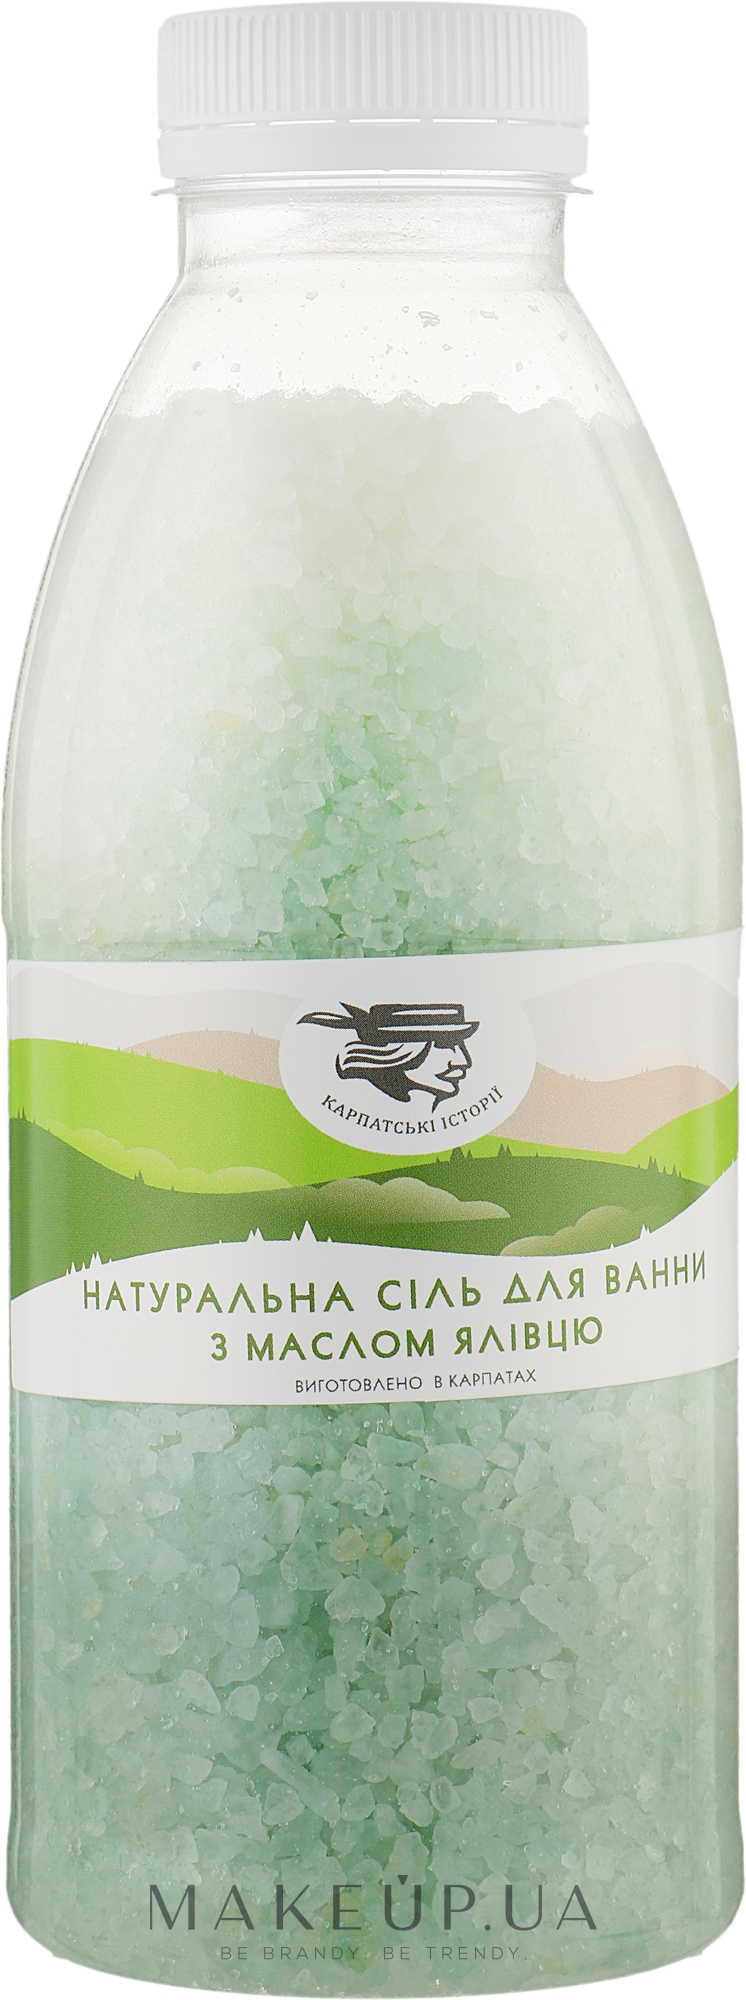 Натуральна сіль для ванни з олією ялівцю - Карпатські Історії — фото 600g